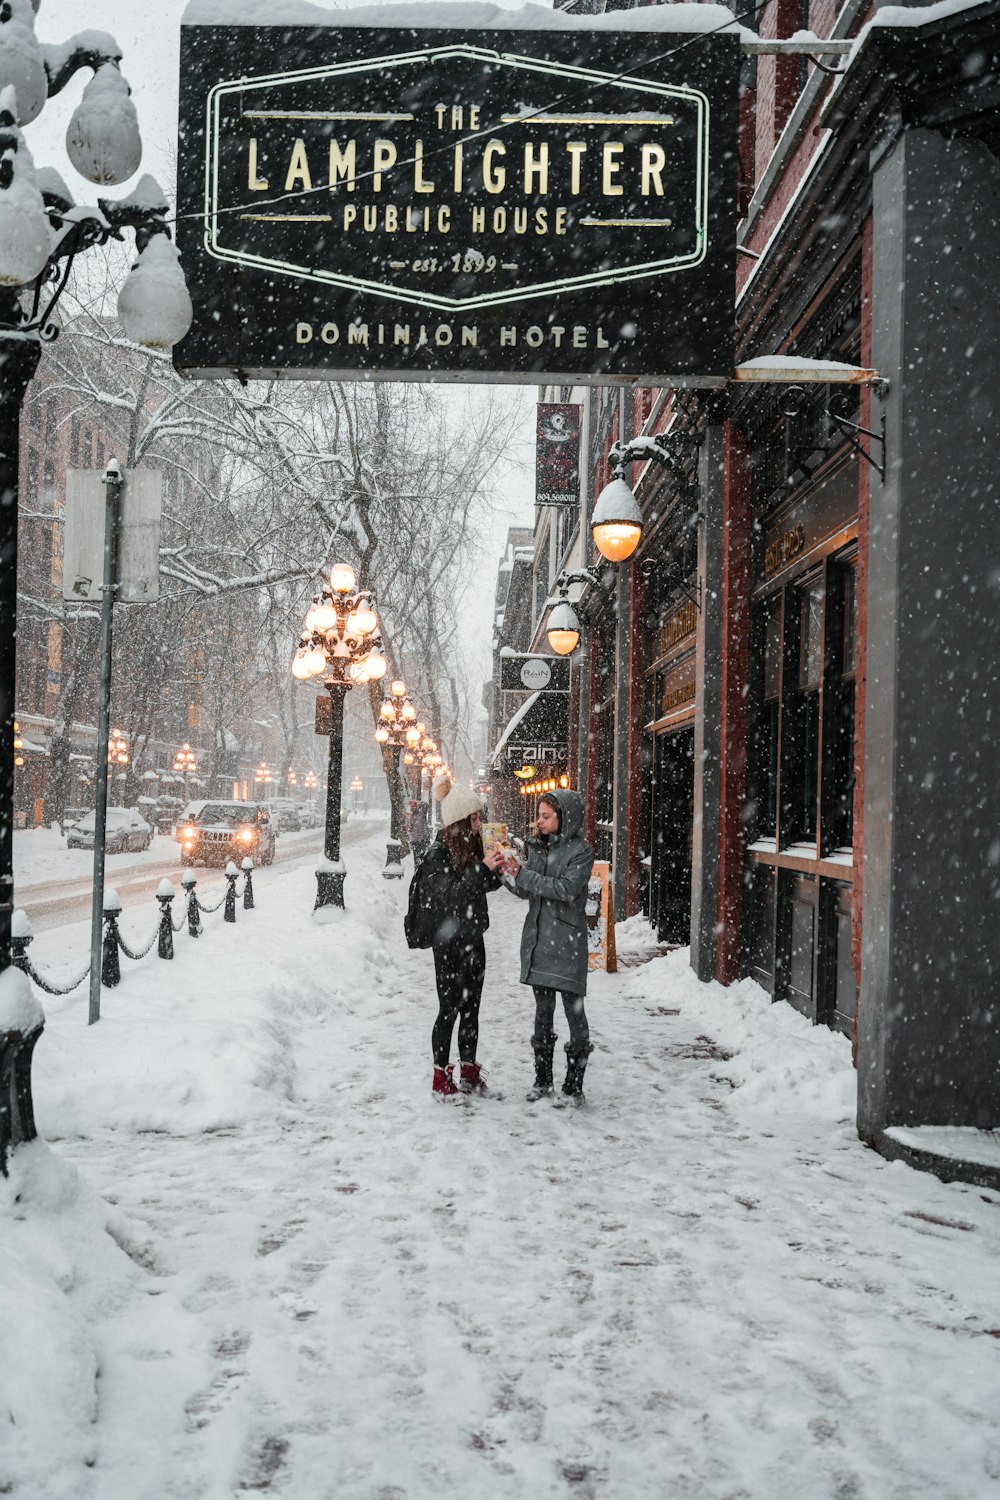 Un par de personas caminando por una calle cubierta de nieve